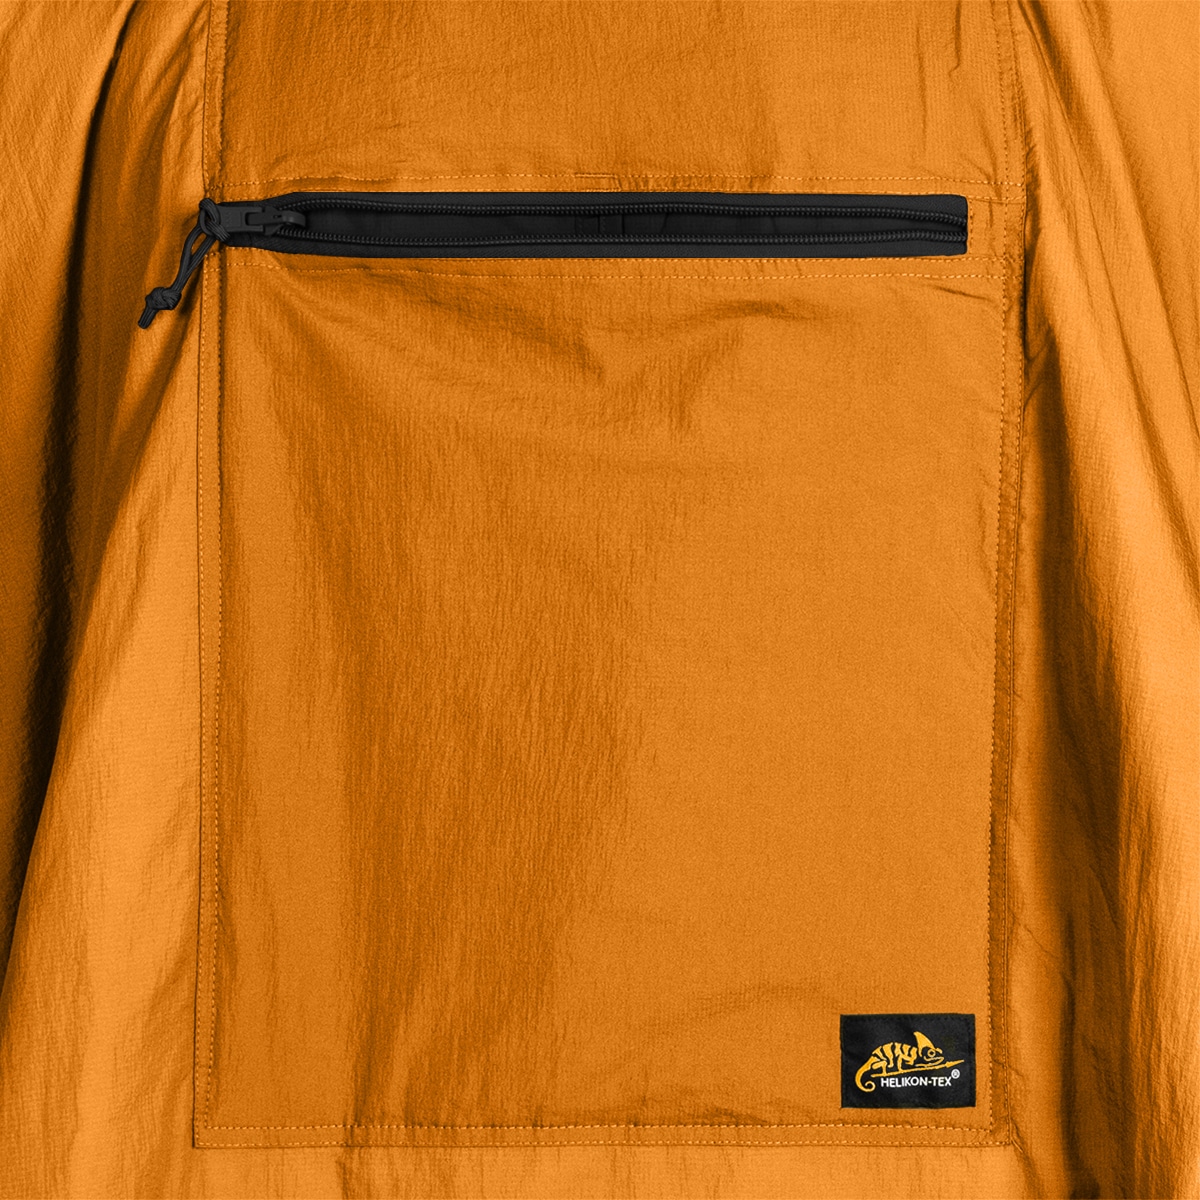 Ponczo Helikon Swagman Roll Climashield Apex z funkcją śpiwora - Orange